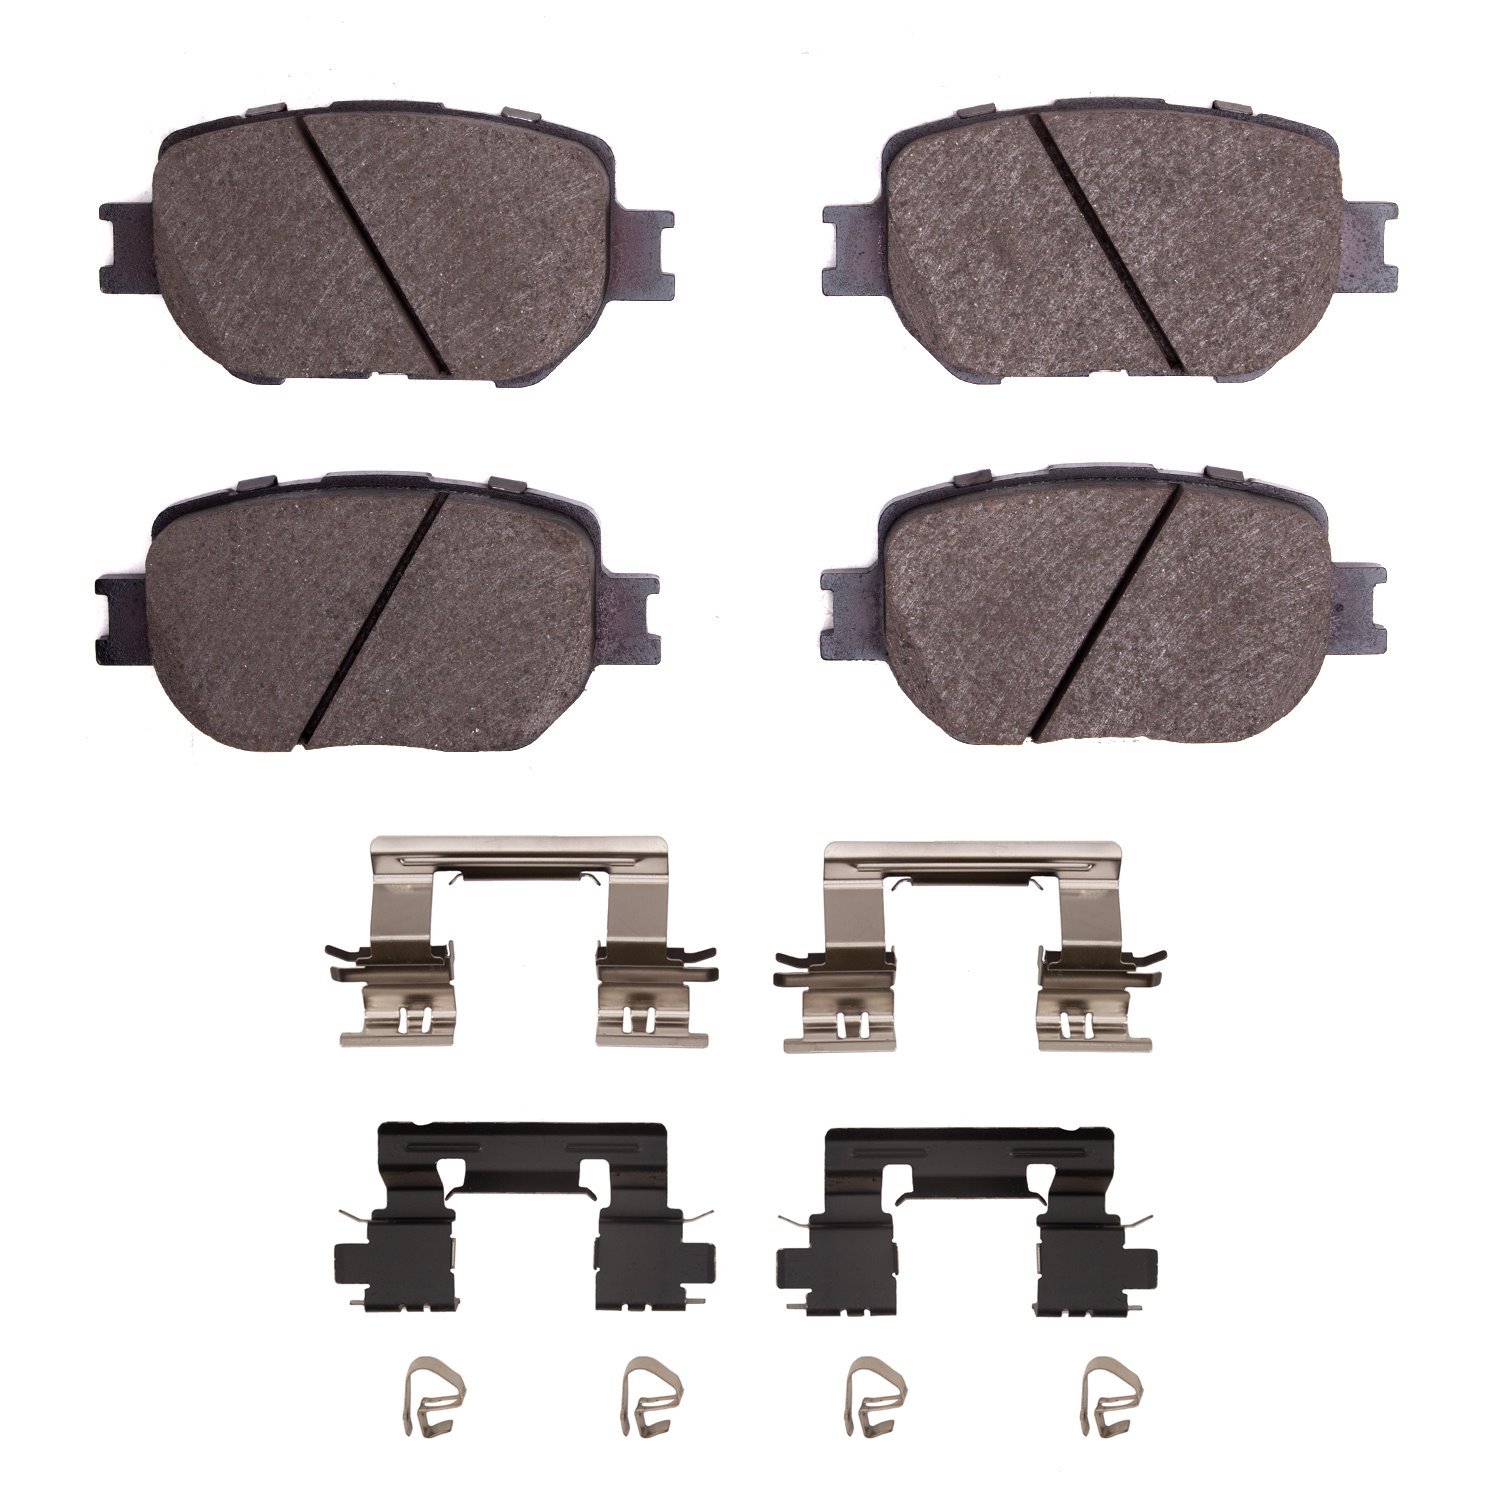 1310-1733-01 3000-Series Ceramic Brake Pads & Hardware Kit, 2014-2015 Lexus/Toyota/Scion, Position: Front